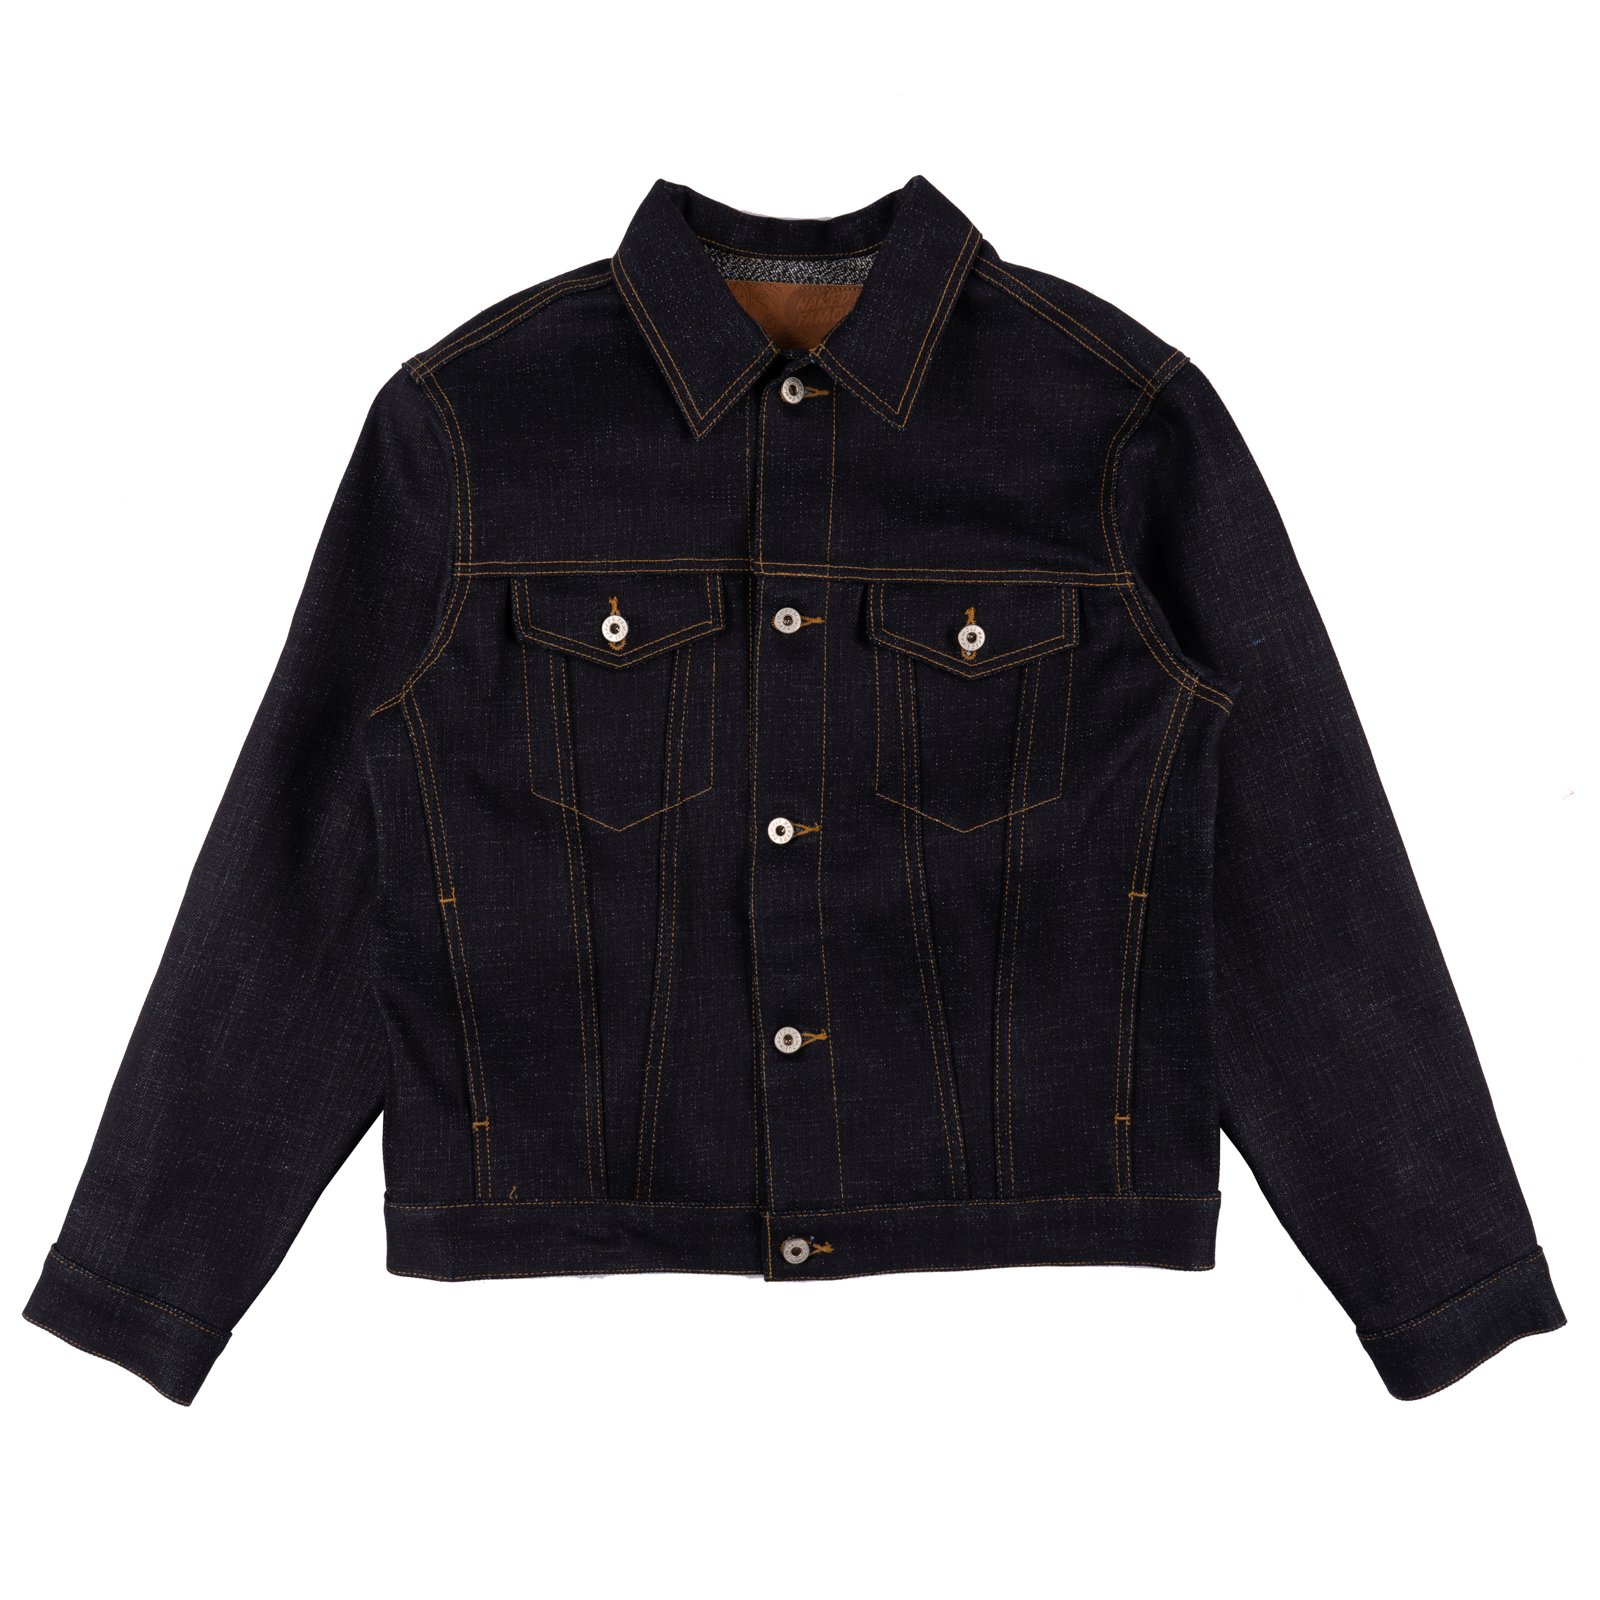 Elephant Leather Jacket, K12917 1010031572